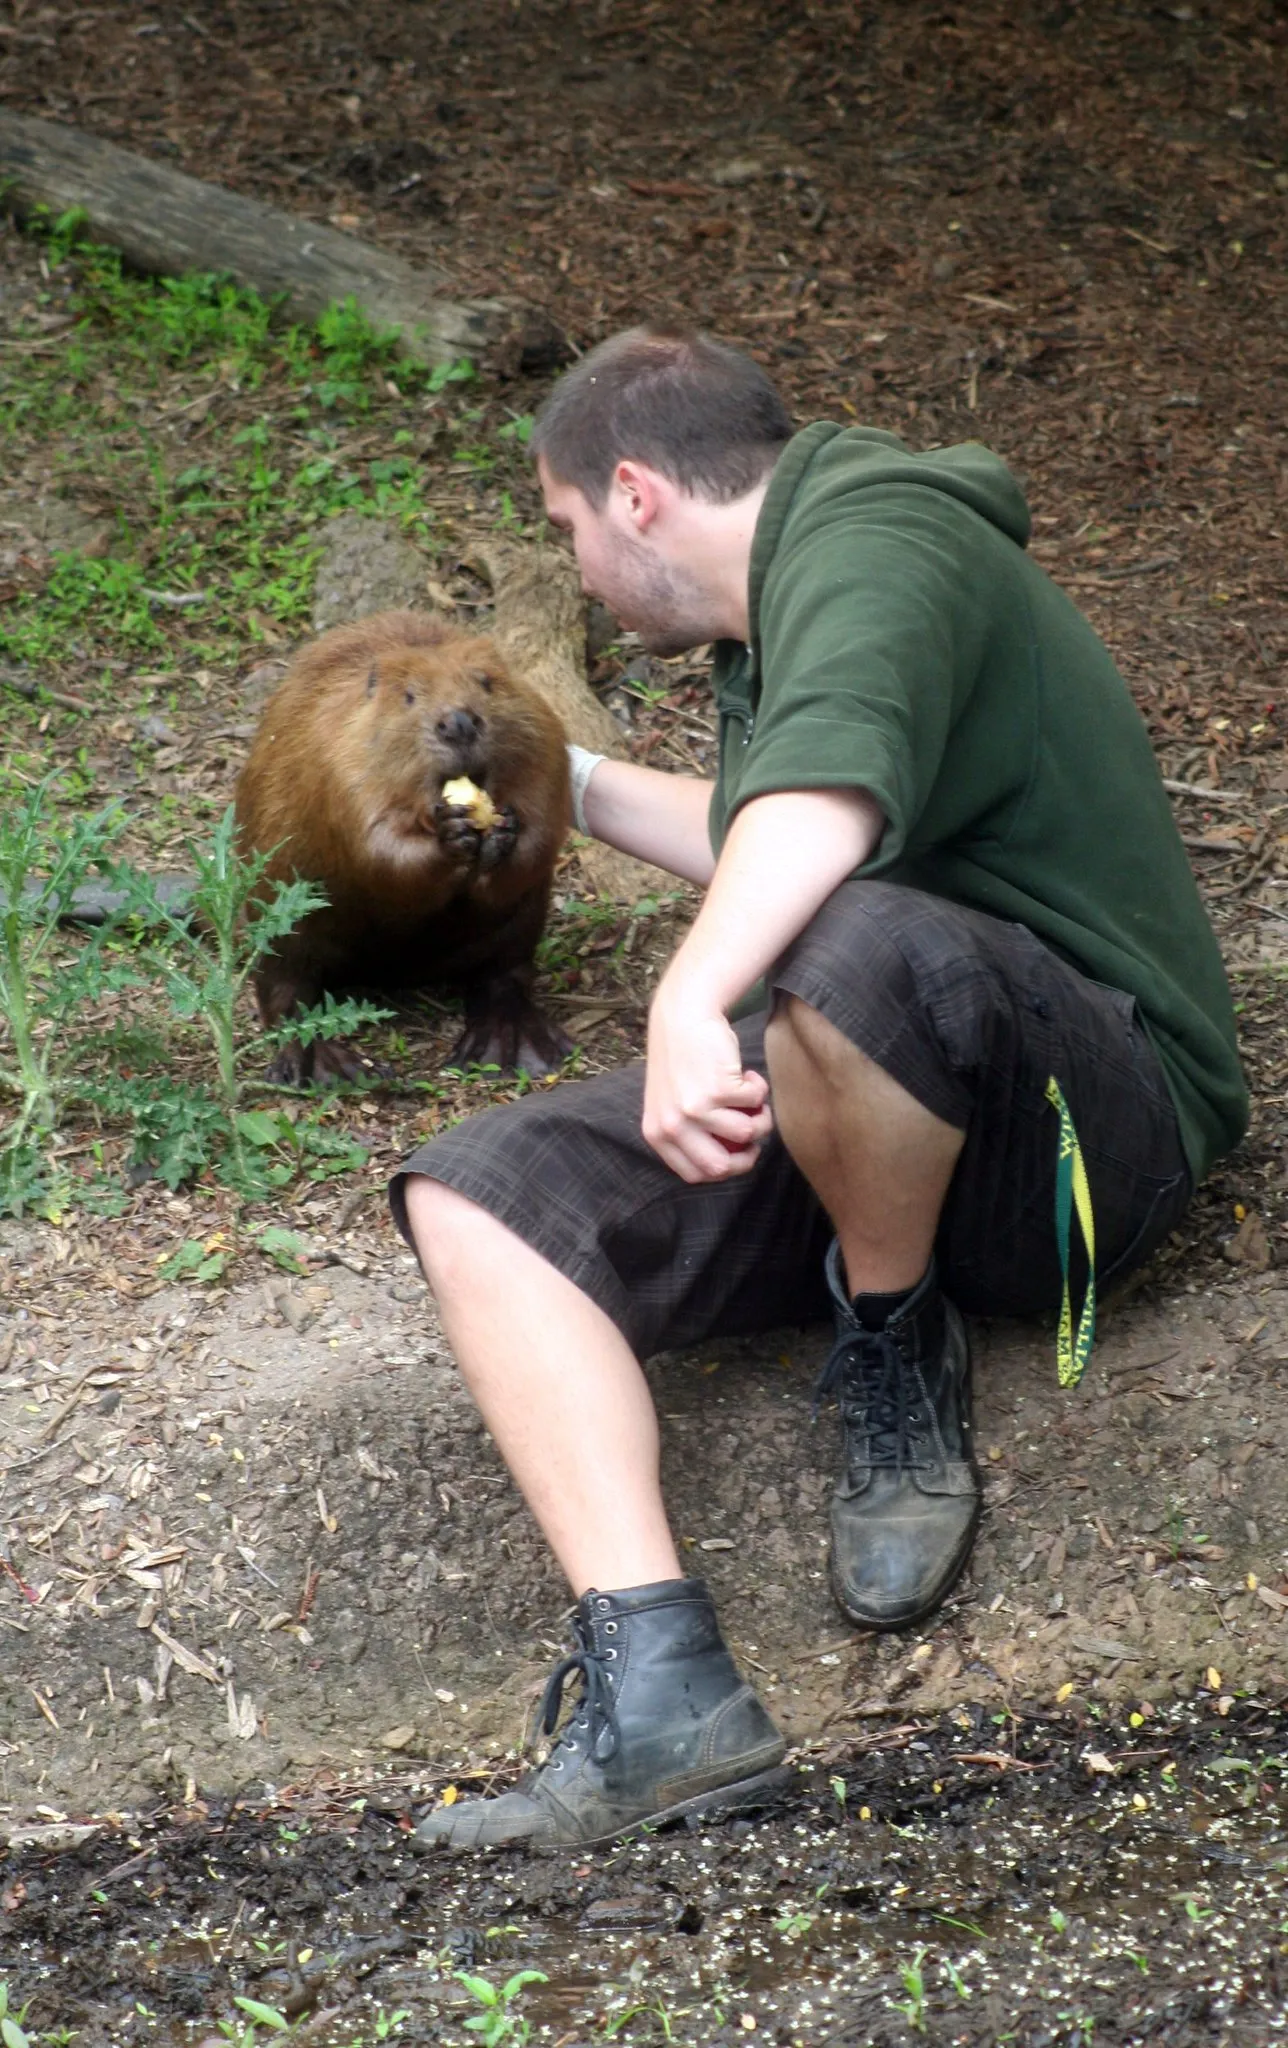 Marmot Vs Beaver Size